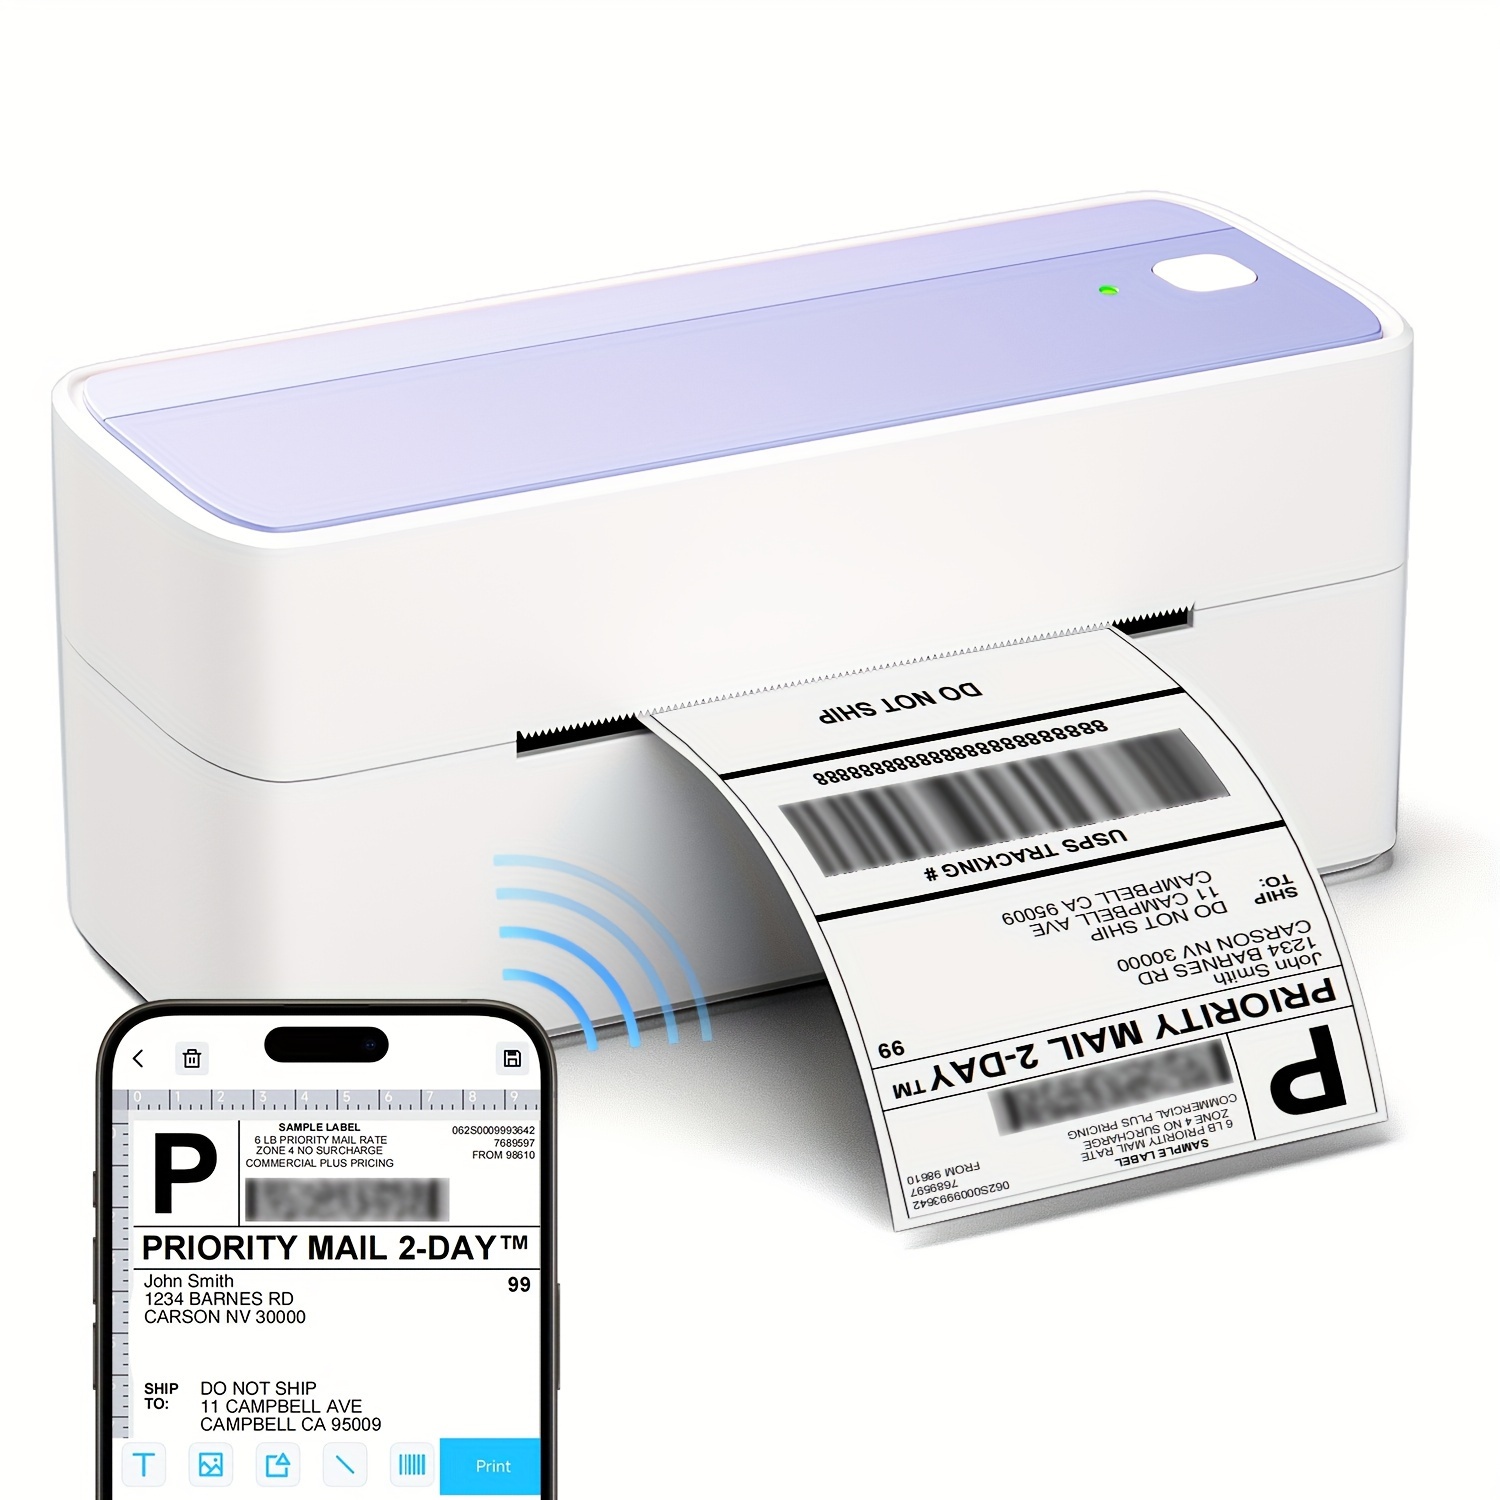 Phomemo P12 Mini Étiqueteuse Bluetooth, imprimante Etiquette autocollante  Thermiques pour la Maison, Le Bureau et Les Petites Entreprises, Wireless